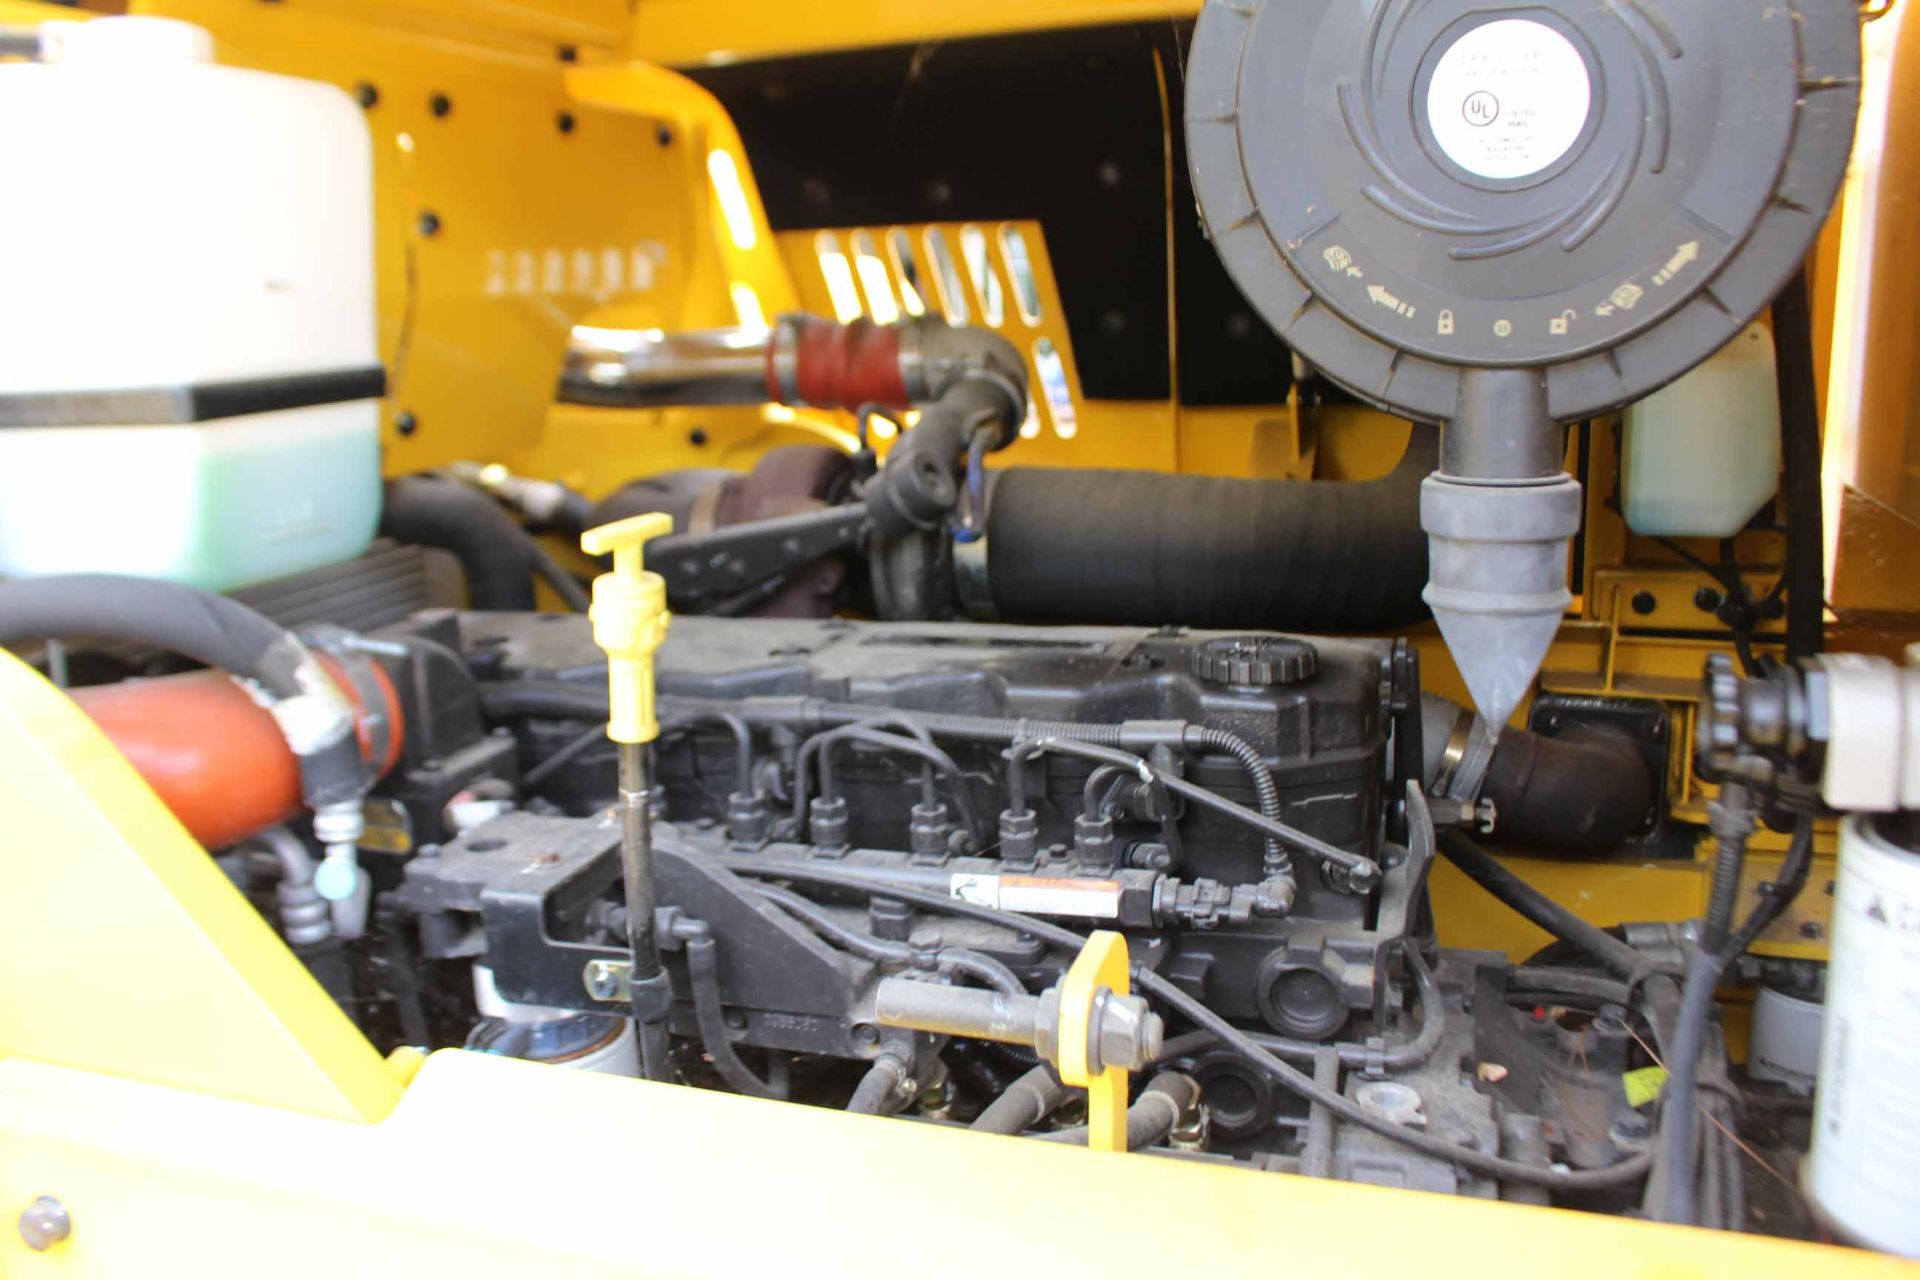 FORKLIFT, HYUNDAI MDL. 160D-7E, new 2012, diesel, 35,000 lb. cap., 198.3 hours, 8" forks, sgl. - Image 4 of 4